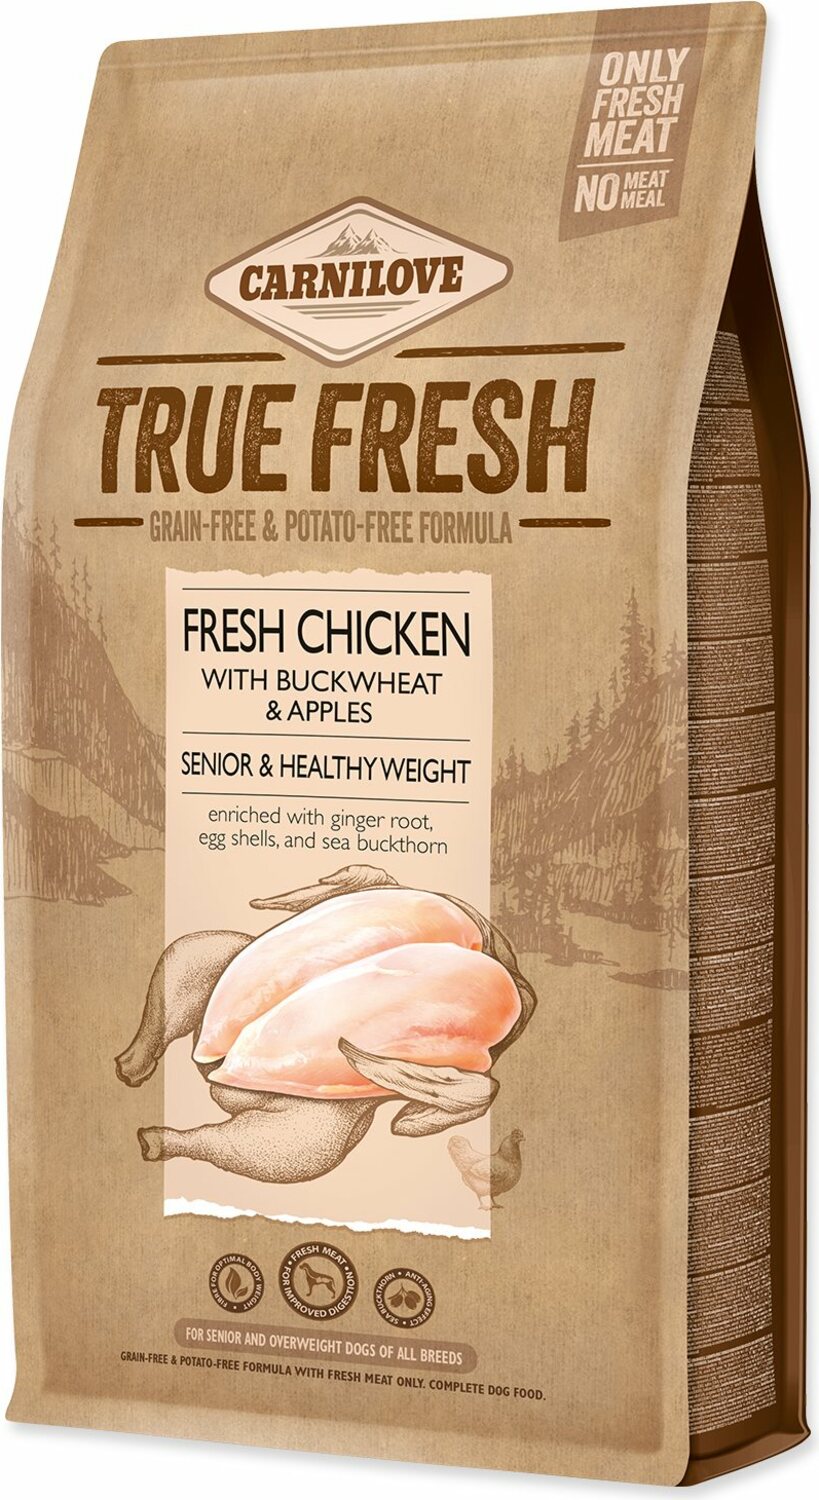 Krmivo Carnilove True Fresh pro seniory Healthy Weight Chicken 4kg